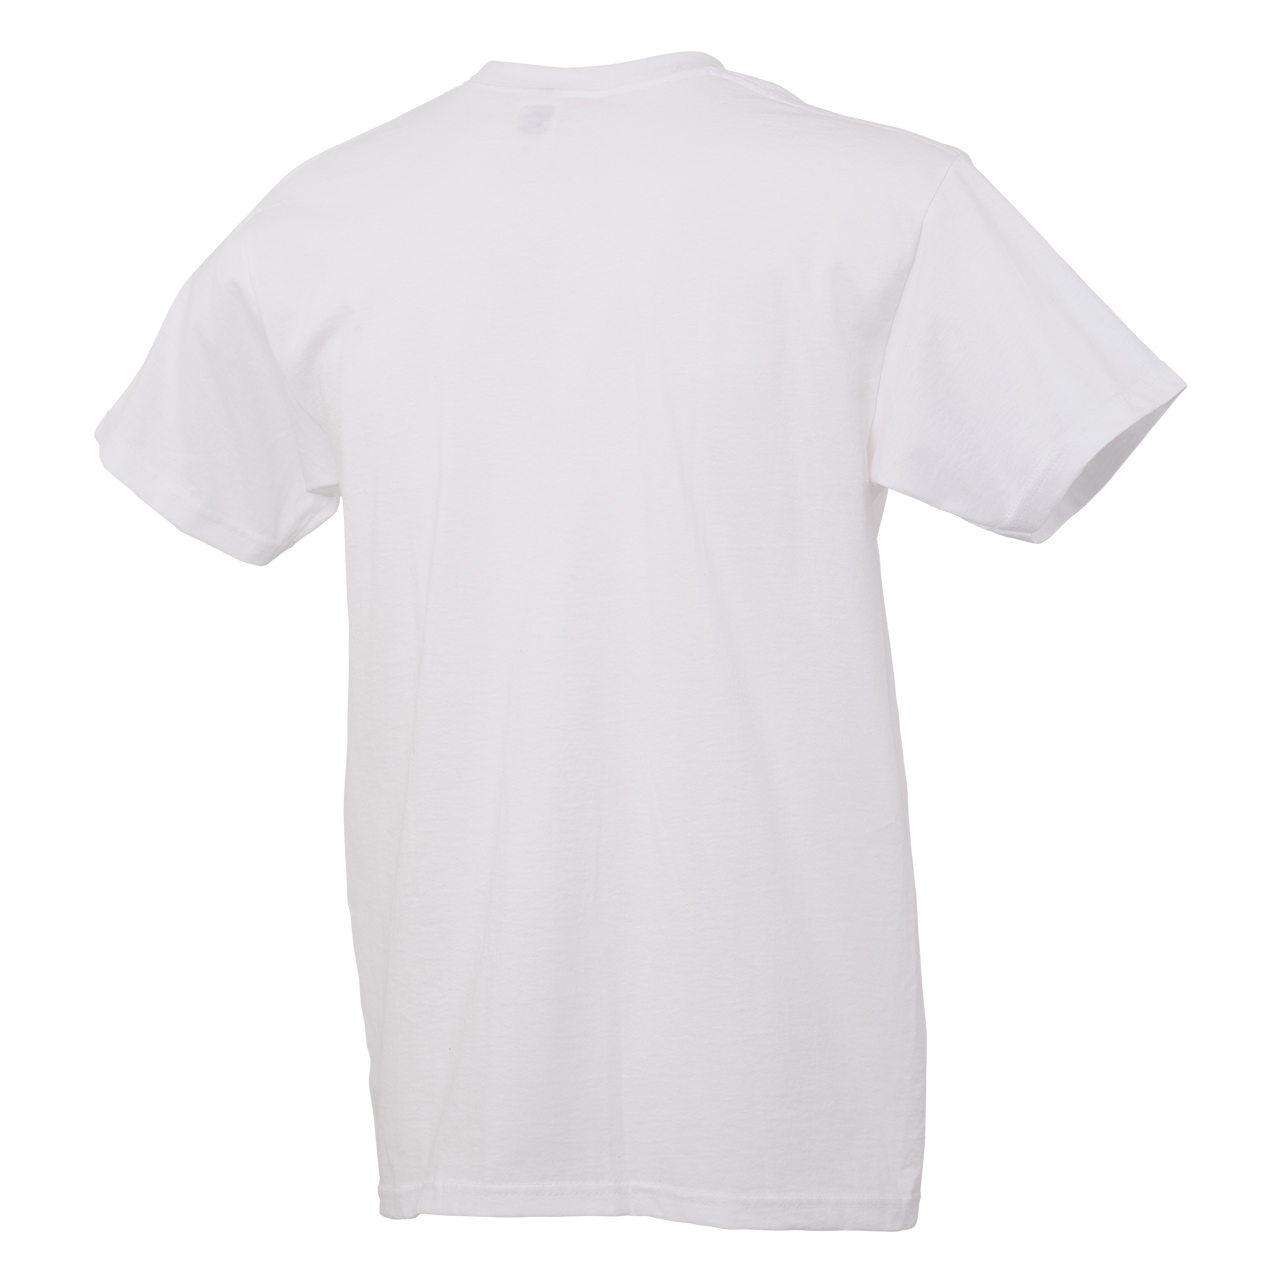 T-shirt "Dynamic", white